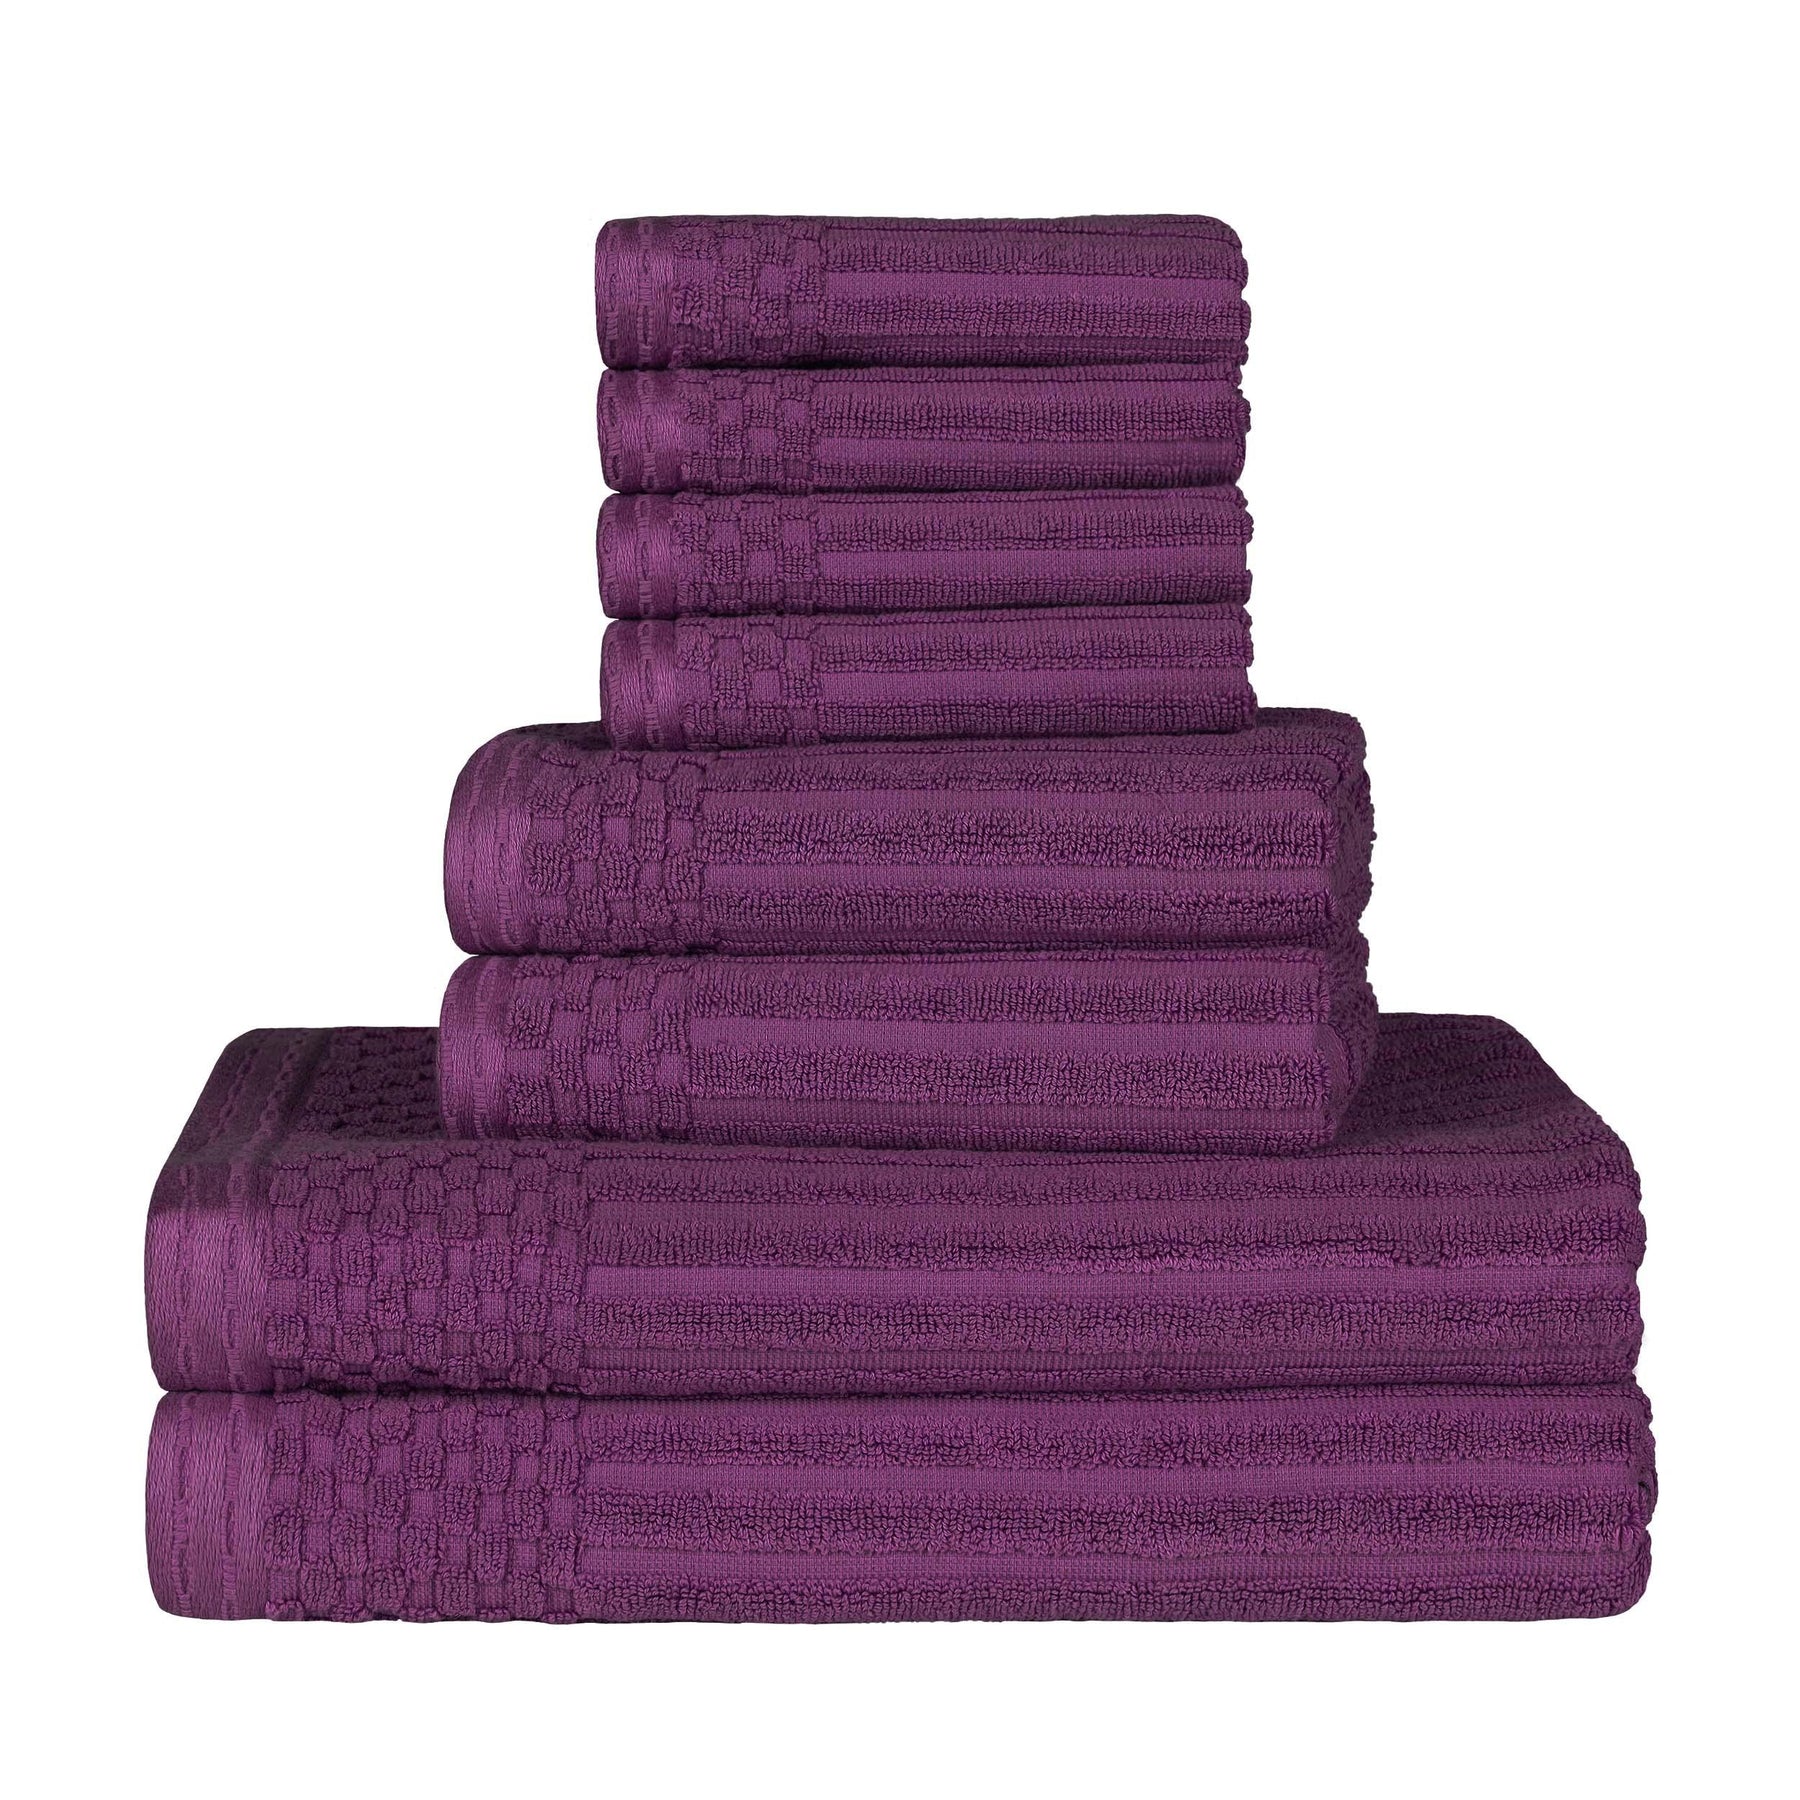 Ribbed Textured Cotton Medium Weight 8 Piece Towel Set -  Plum